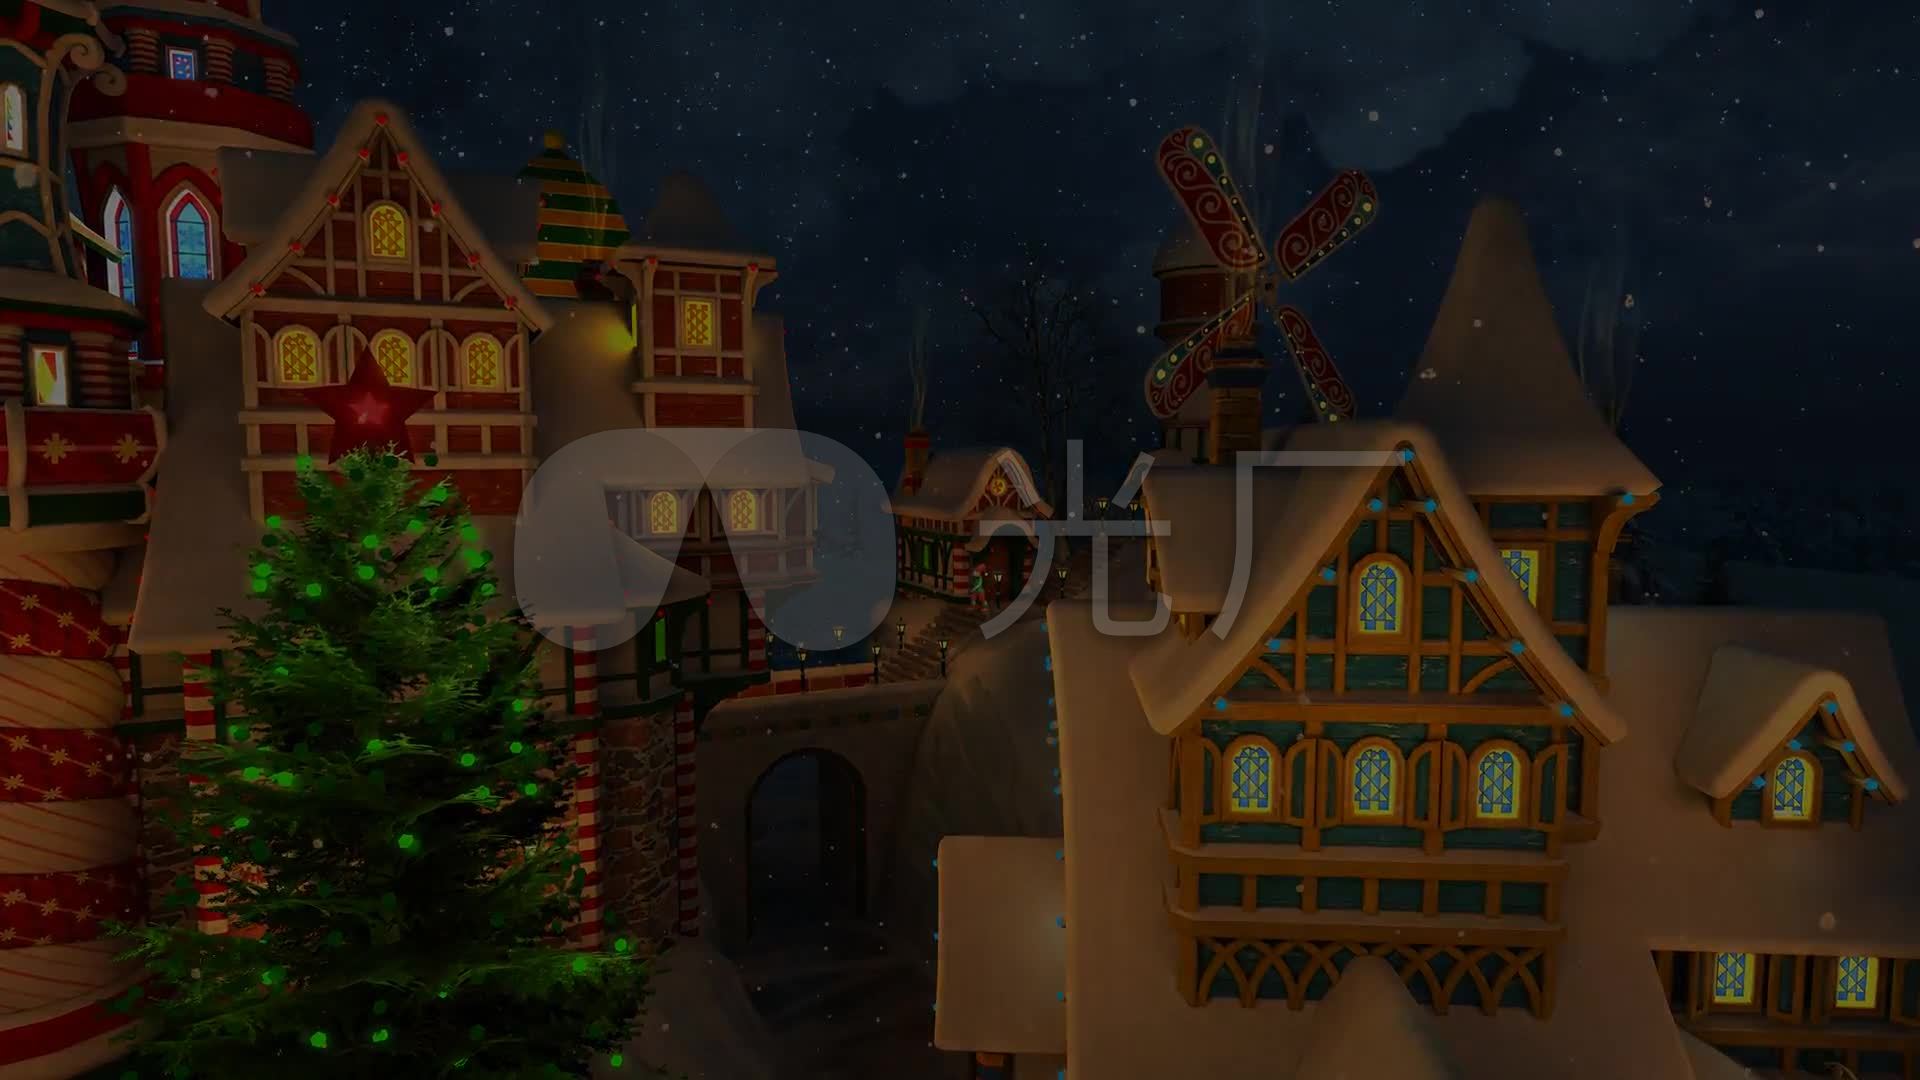 3d唯美梦幻卡通圣诞小镇城堡通用视频